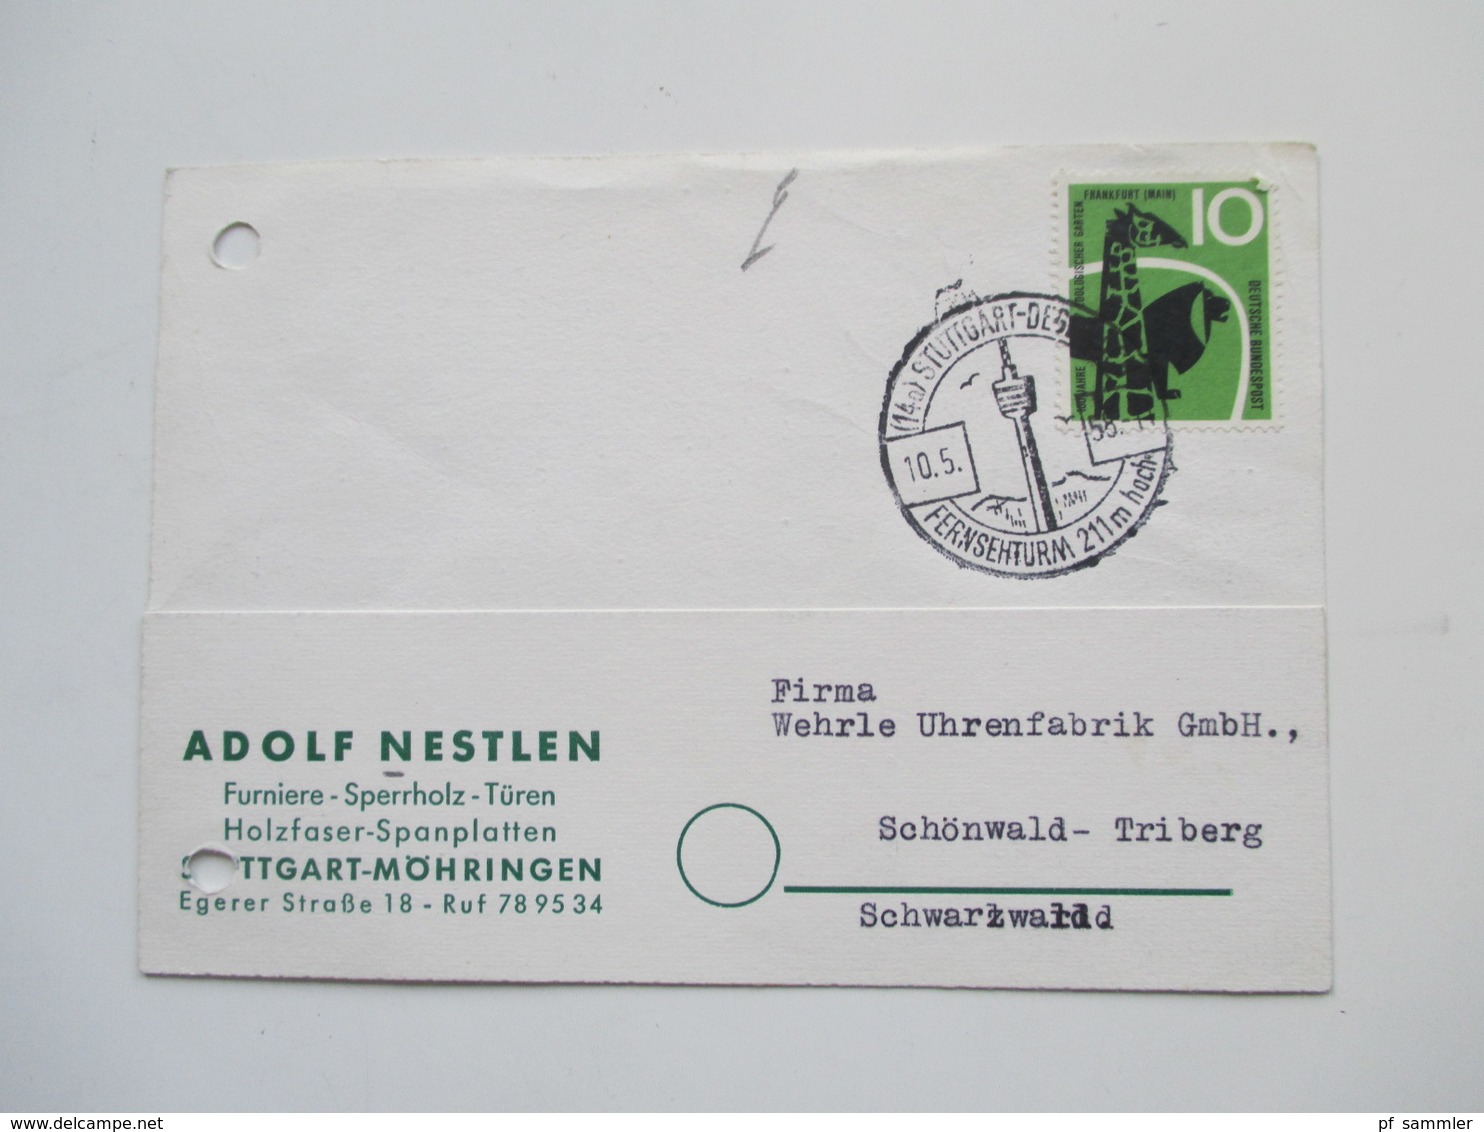 BRD 1950er Jahre ab 1951. 40 Postkarten / Belege / Firmenkorrespondenz! EF / MiF / MeF interessante Stücke!